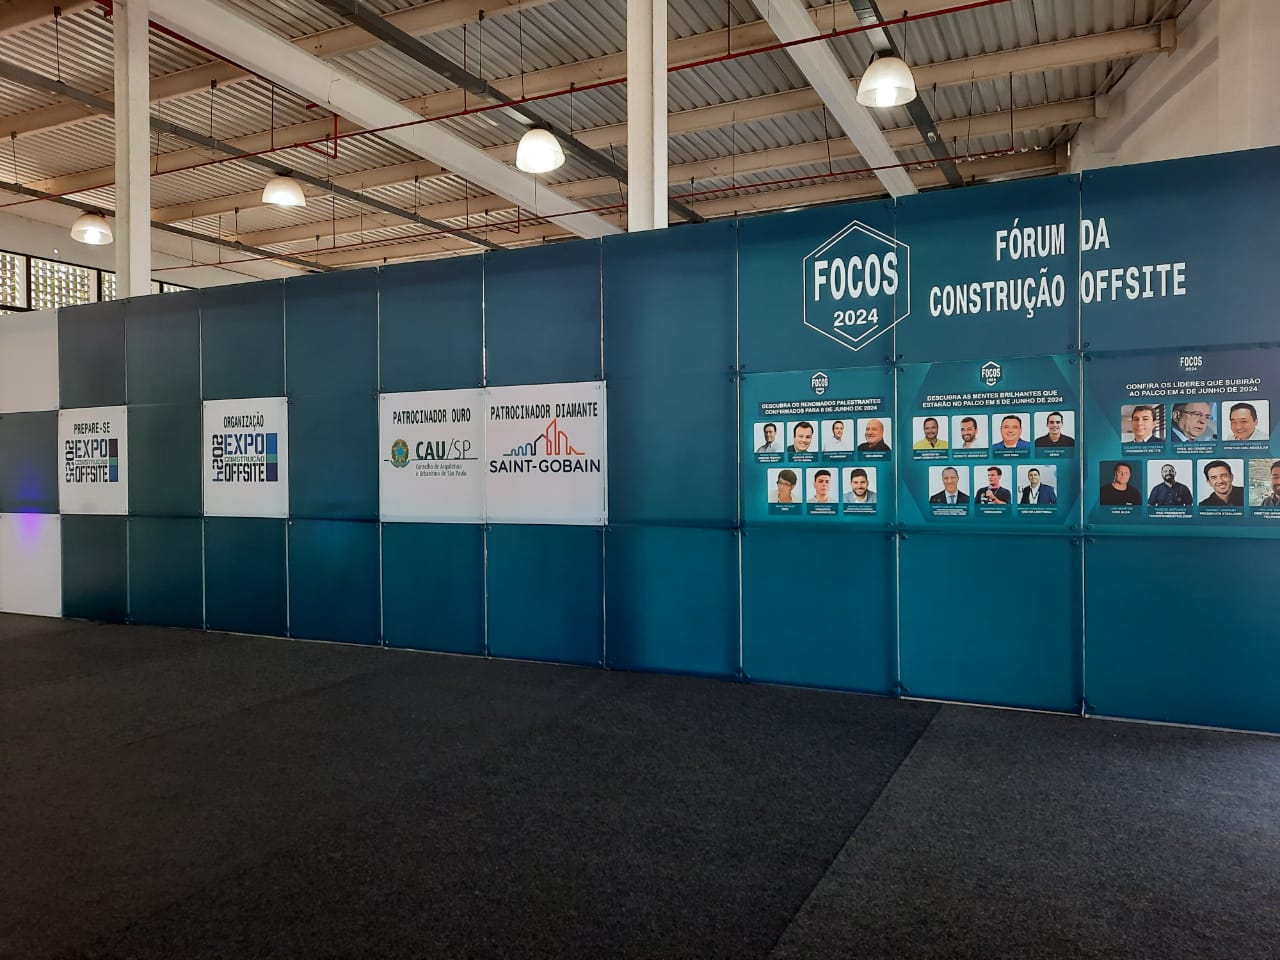 #PraCegoVerA foto mostra banners do evento chamado “FÓRUM DA CONSTRUÇÃO OFFSITE” e “FOCOS 2024”, com logos dos patrocinadores e apoiadores, a exemplo do CAU São Paulo.